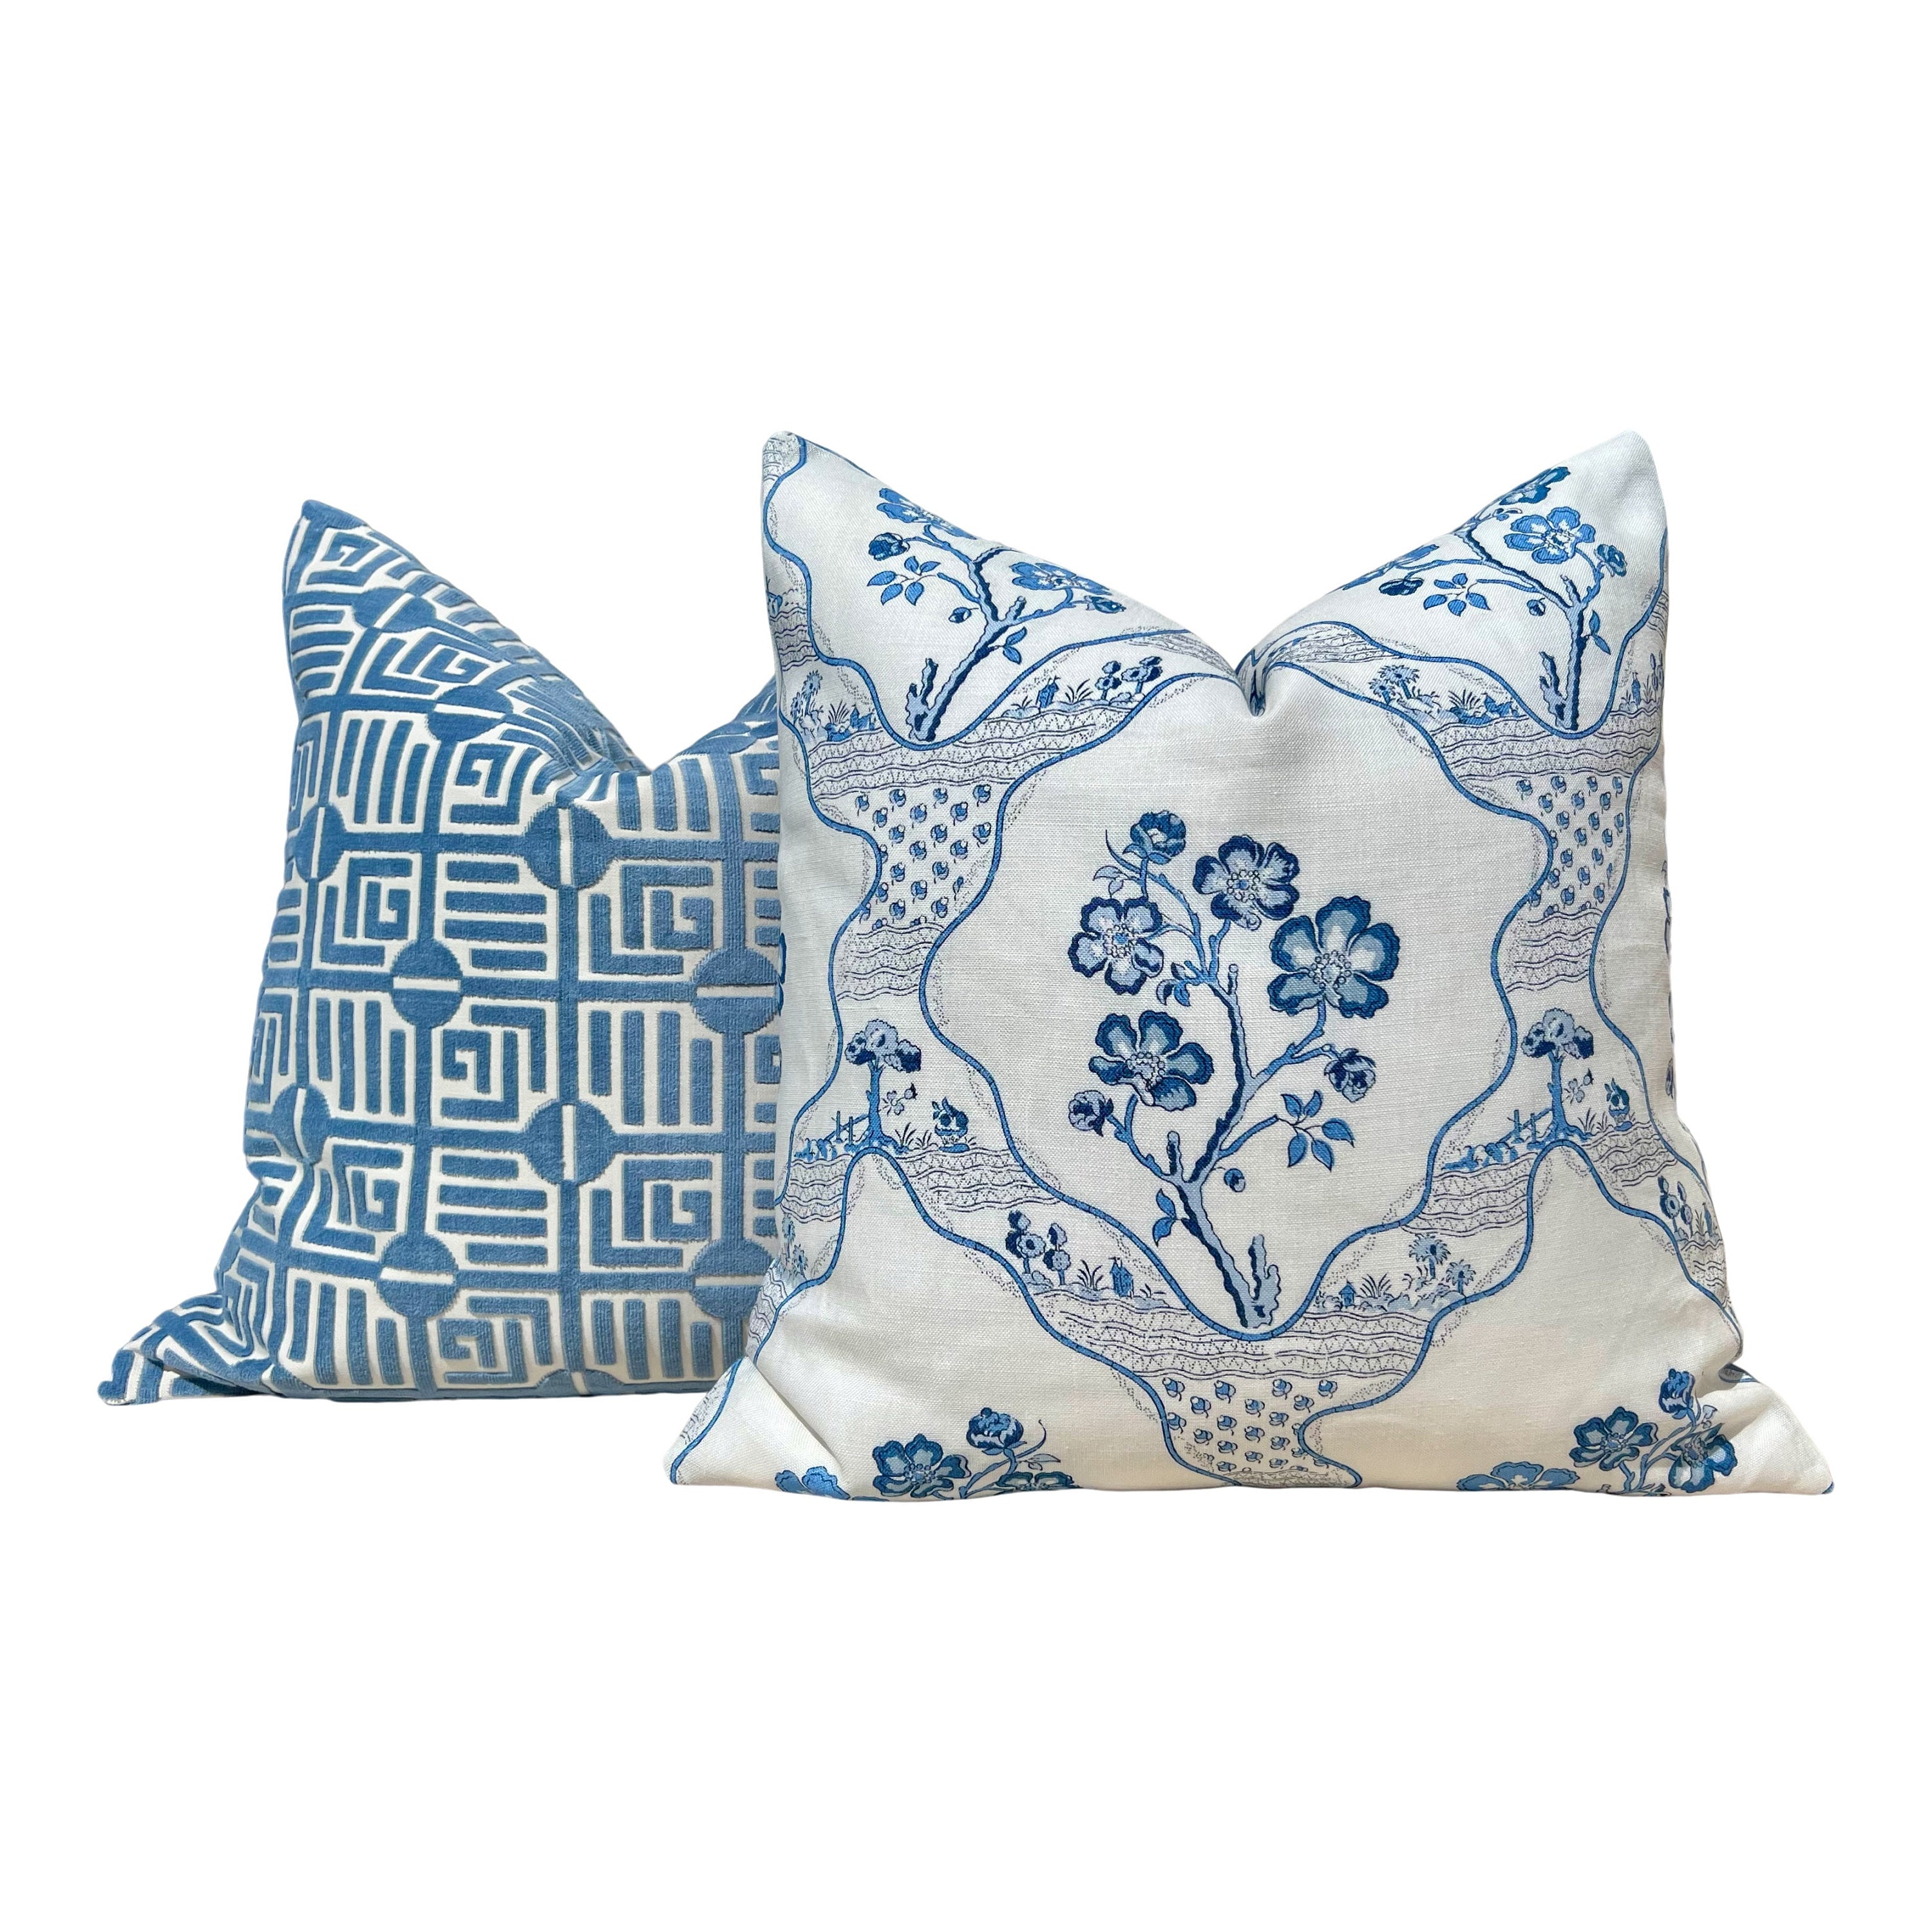 Thibaut Labyrinth Velvet Pillow in Blue. High End Pillows, Designer Raised Velvet Pillows, Geometric Velvet Pillows in Light Blue, Euro Sham